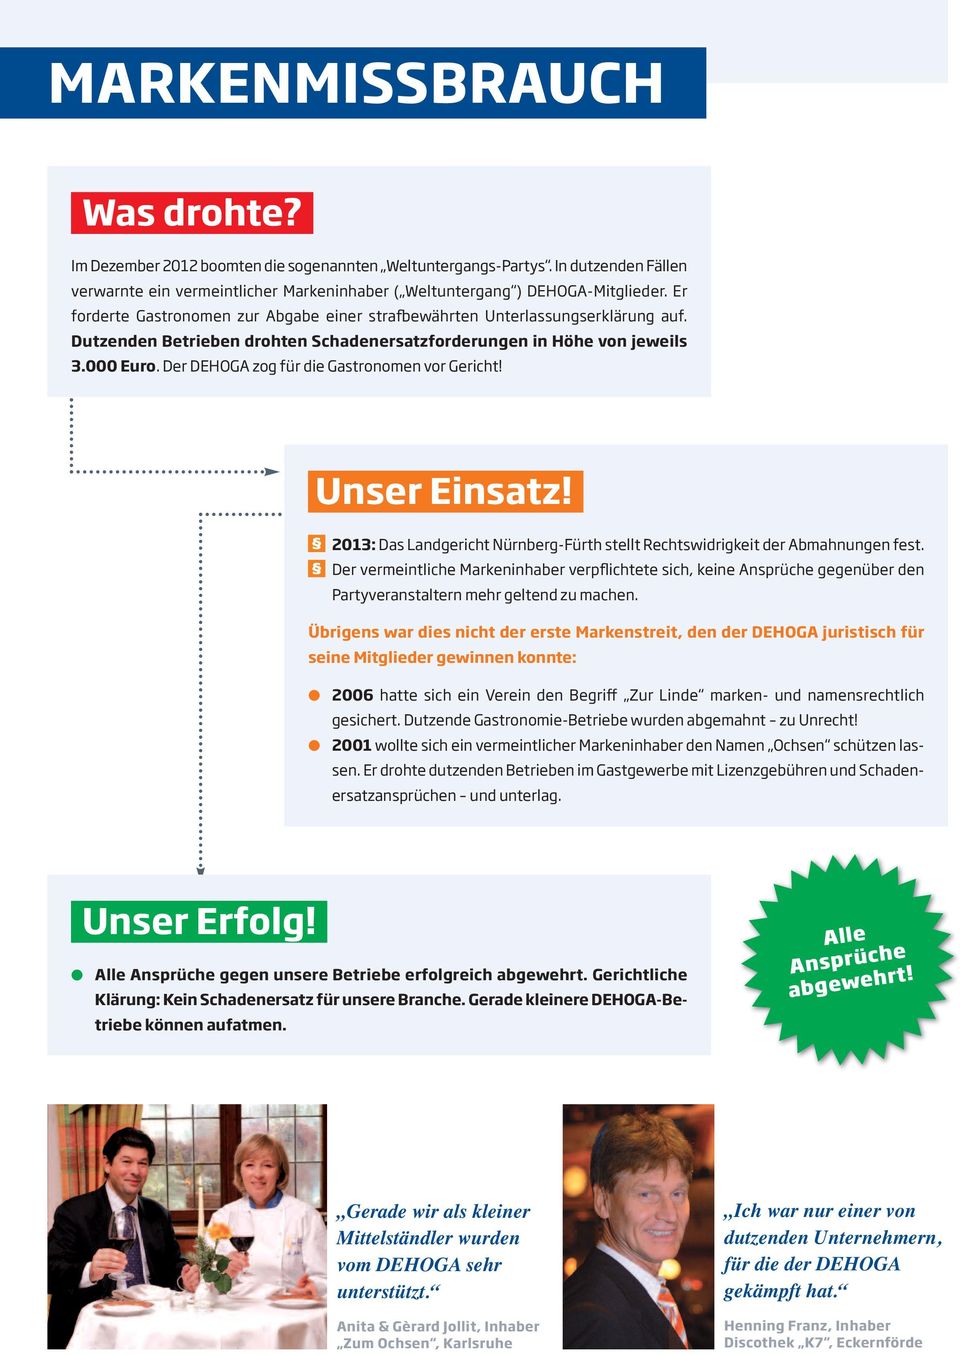 Der DEHOGA zog für die Gastronomen vor Gericht! 2013: Das Landgericht Nürnberg-Fürth stellt Rechtswidrigkeit der Abmahnungen fest.